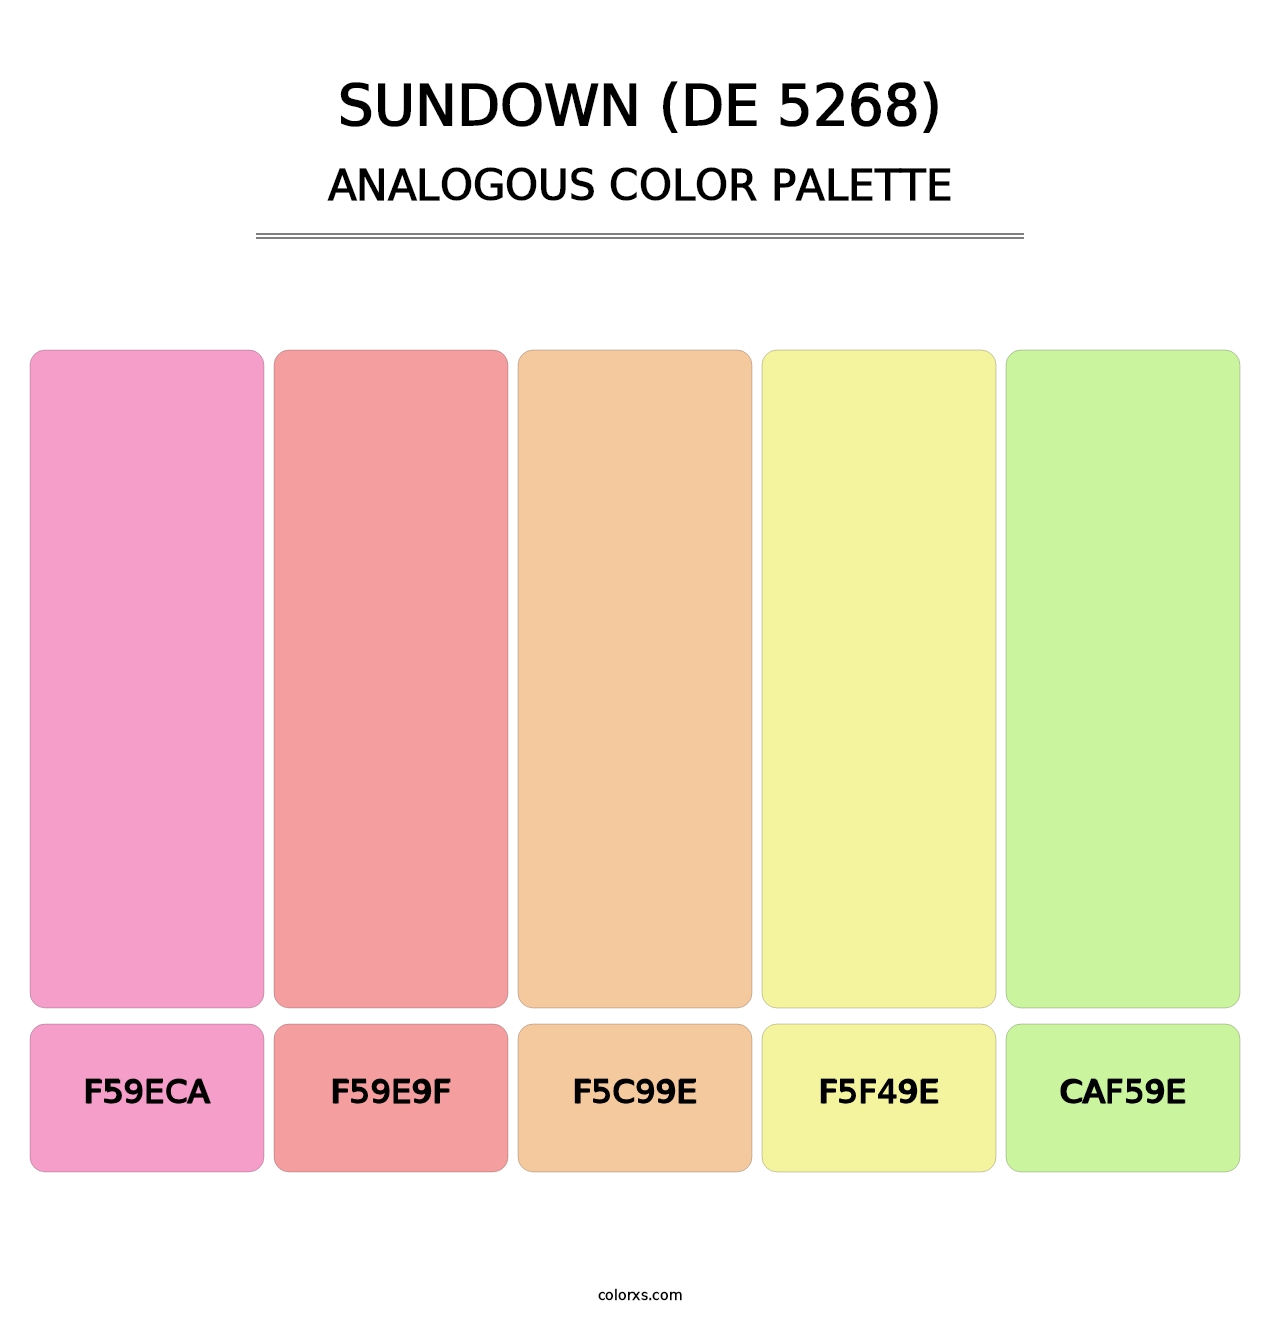 Sundown (DE 5268) - Analogous Color Palette